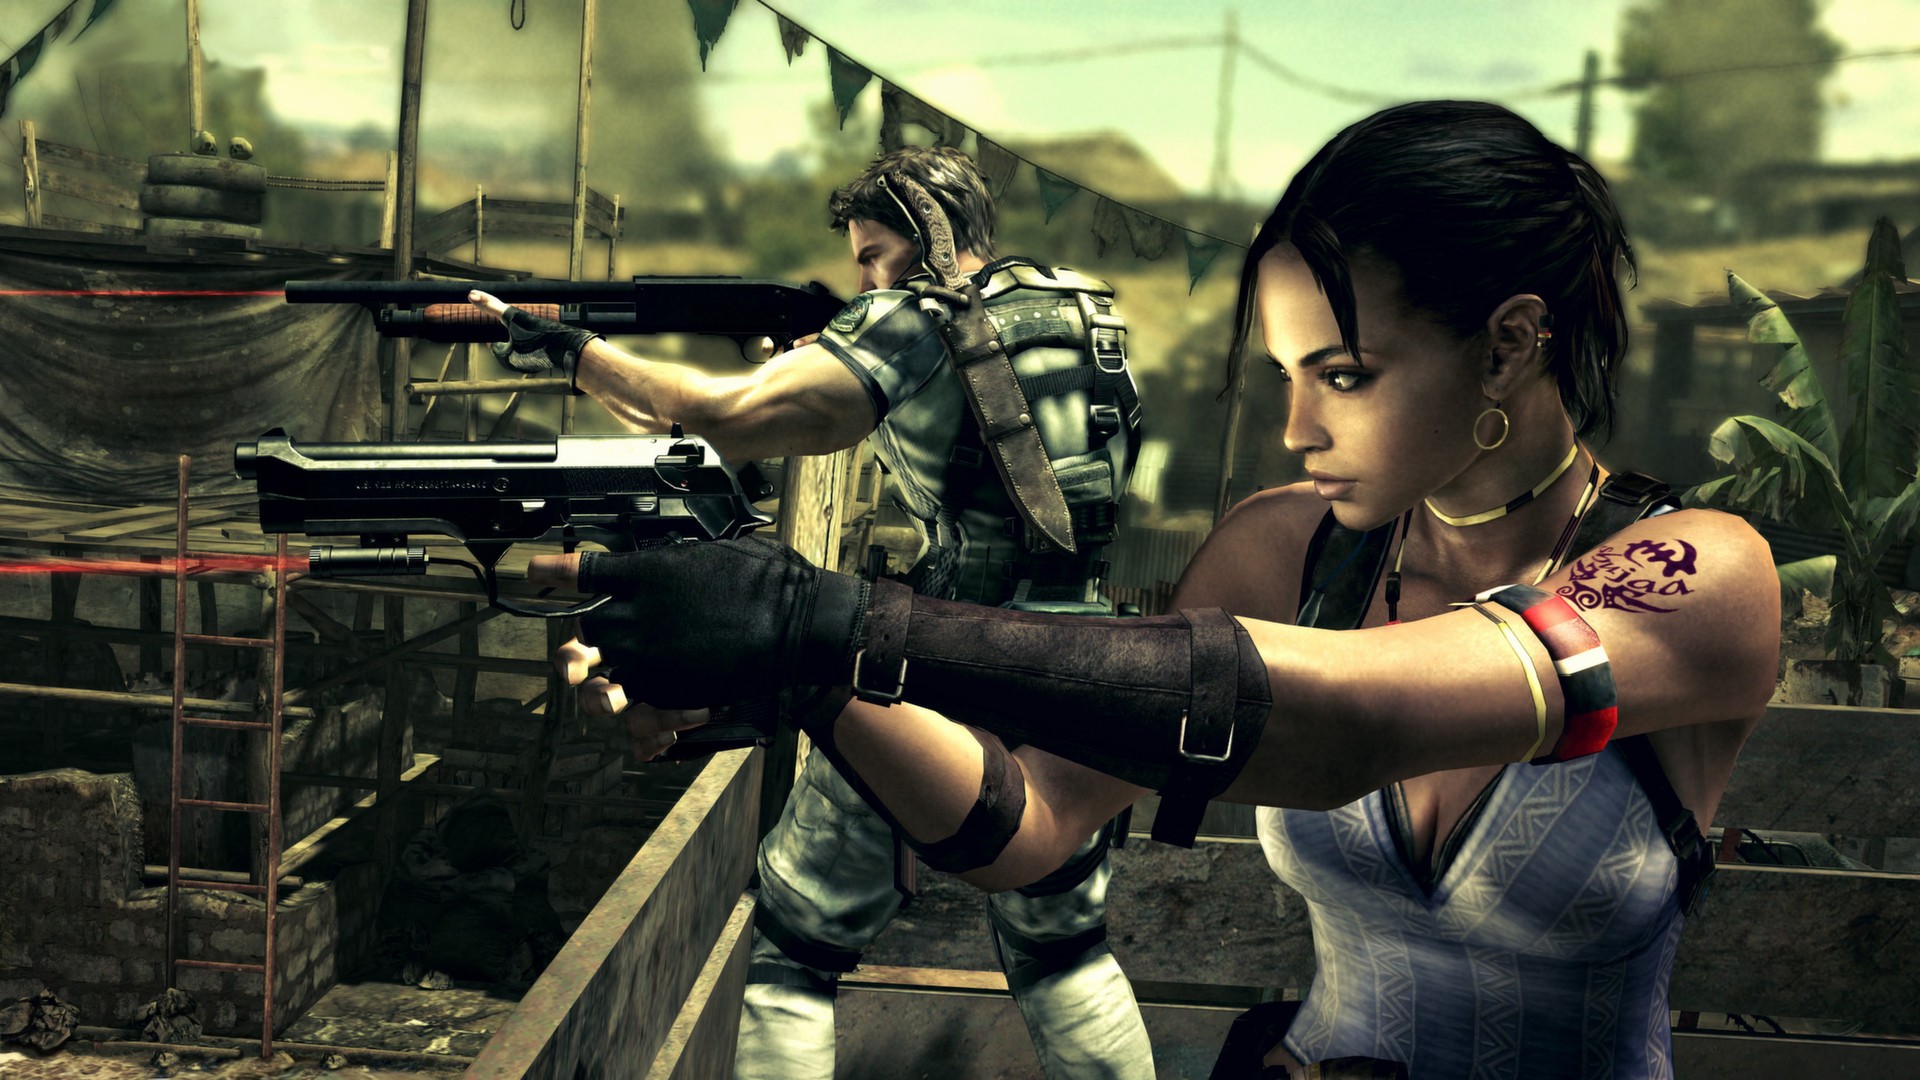 Como traduzir para o português Resident Evil 5 da Steam - Rei dos Games!